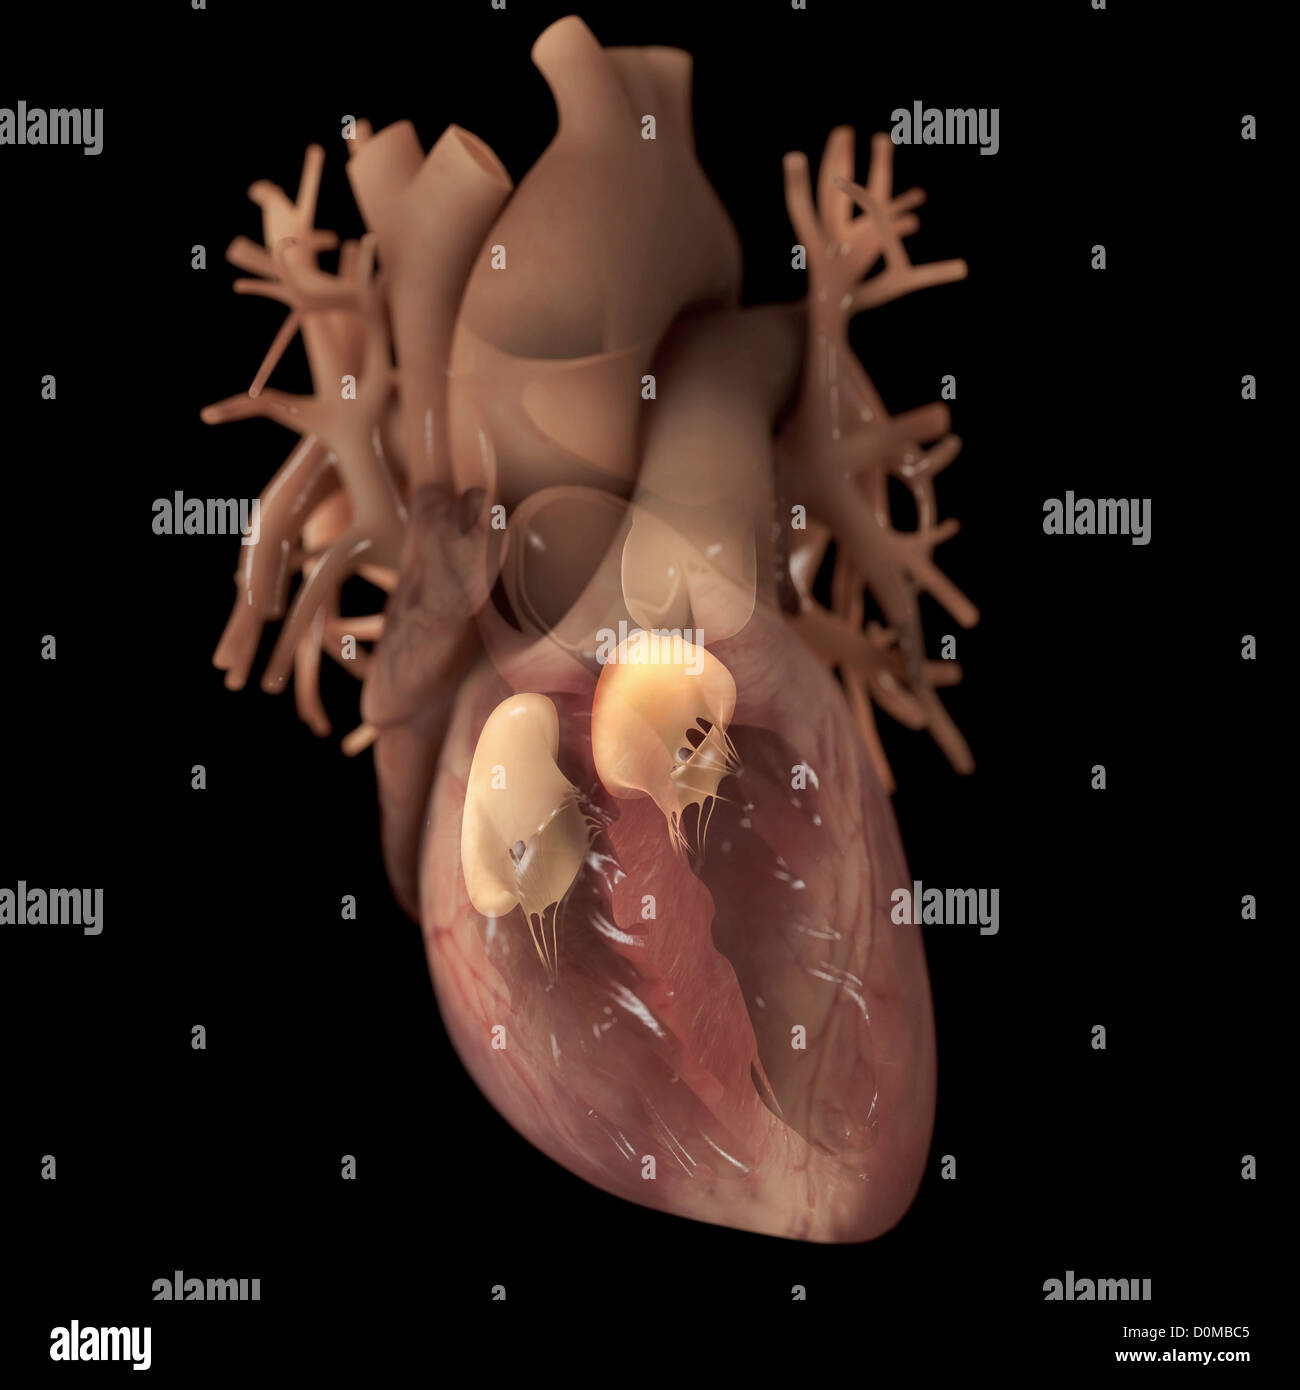 Diagramm eines Herzens, zeigt einen vorderen Schnitt. Die Ventile werden ebenfalls hervorgehoben. Stockfoto